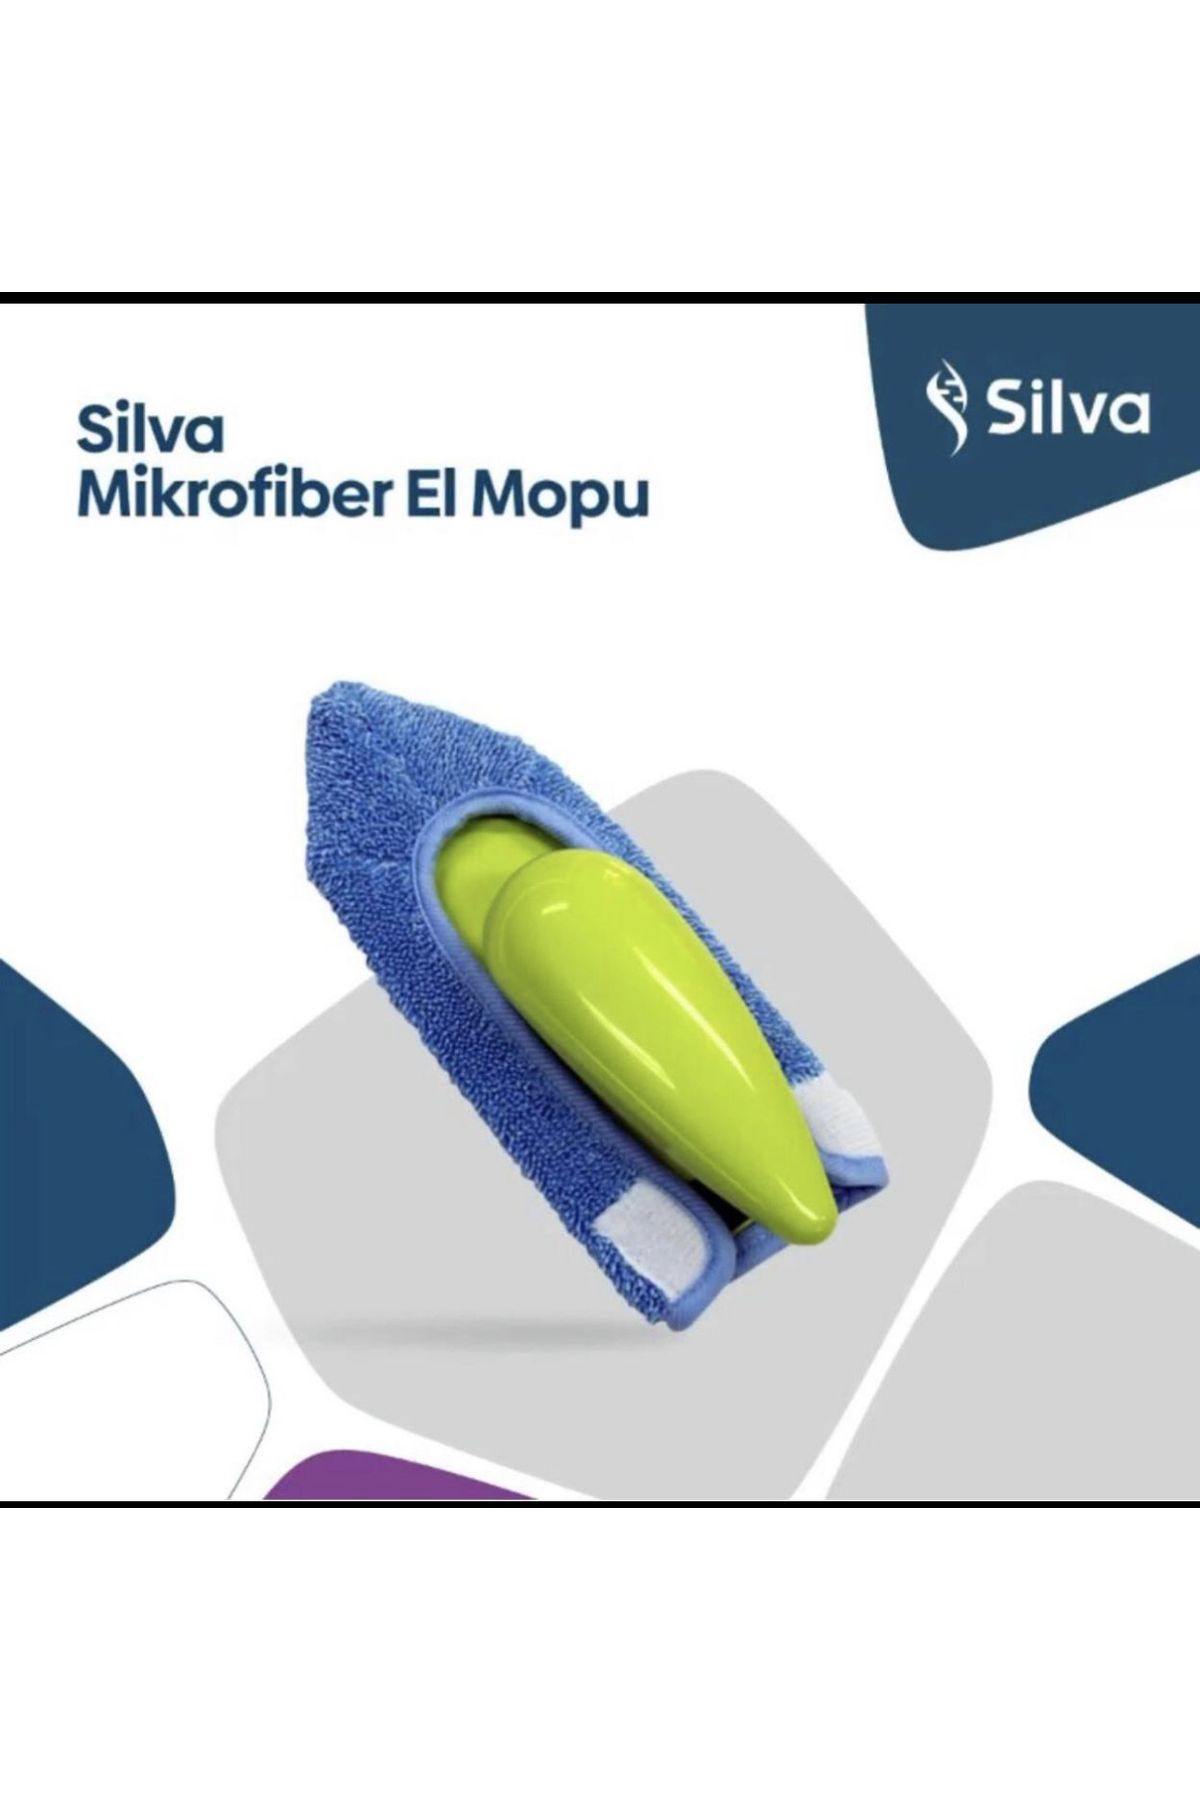 Silva Mikrofiber El Mopu - Ahenk & Ticaret